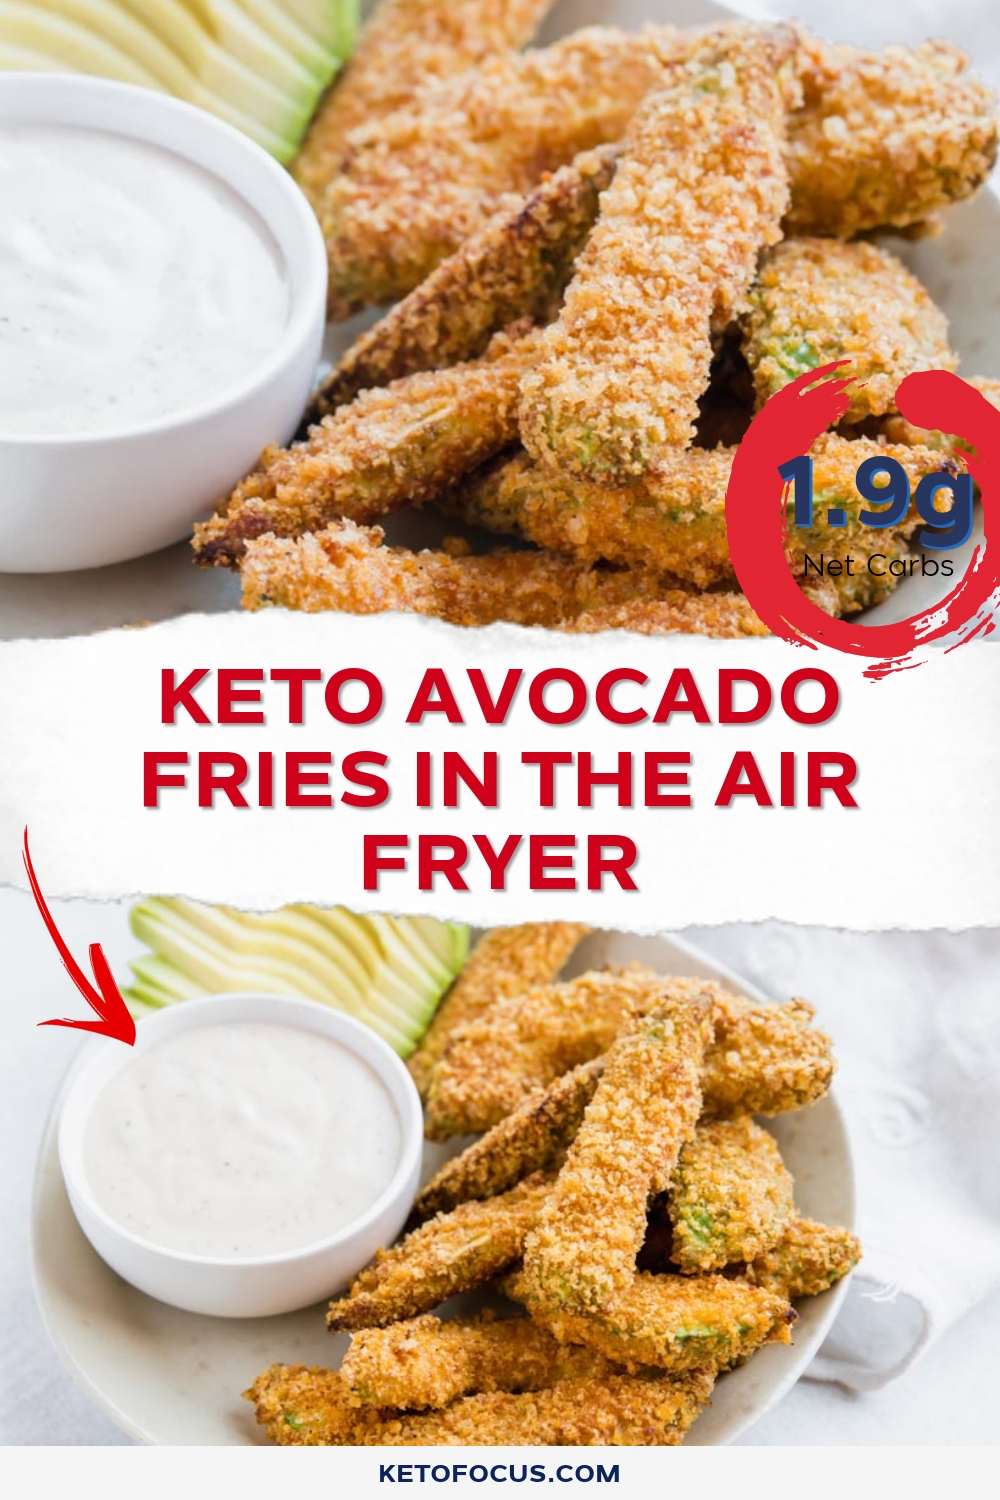 Keto Avocado Fries in the Air Fryer